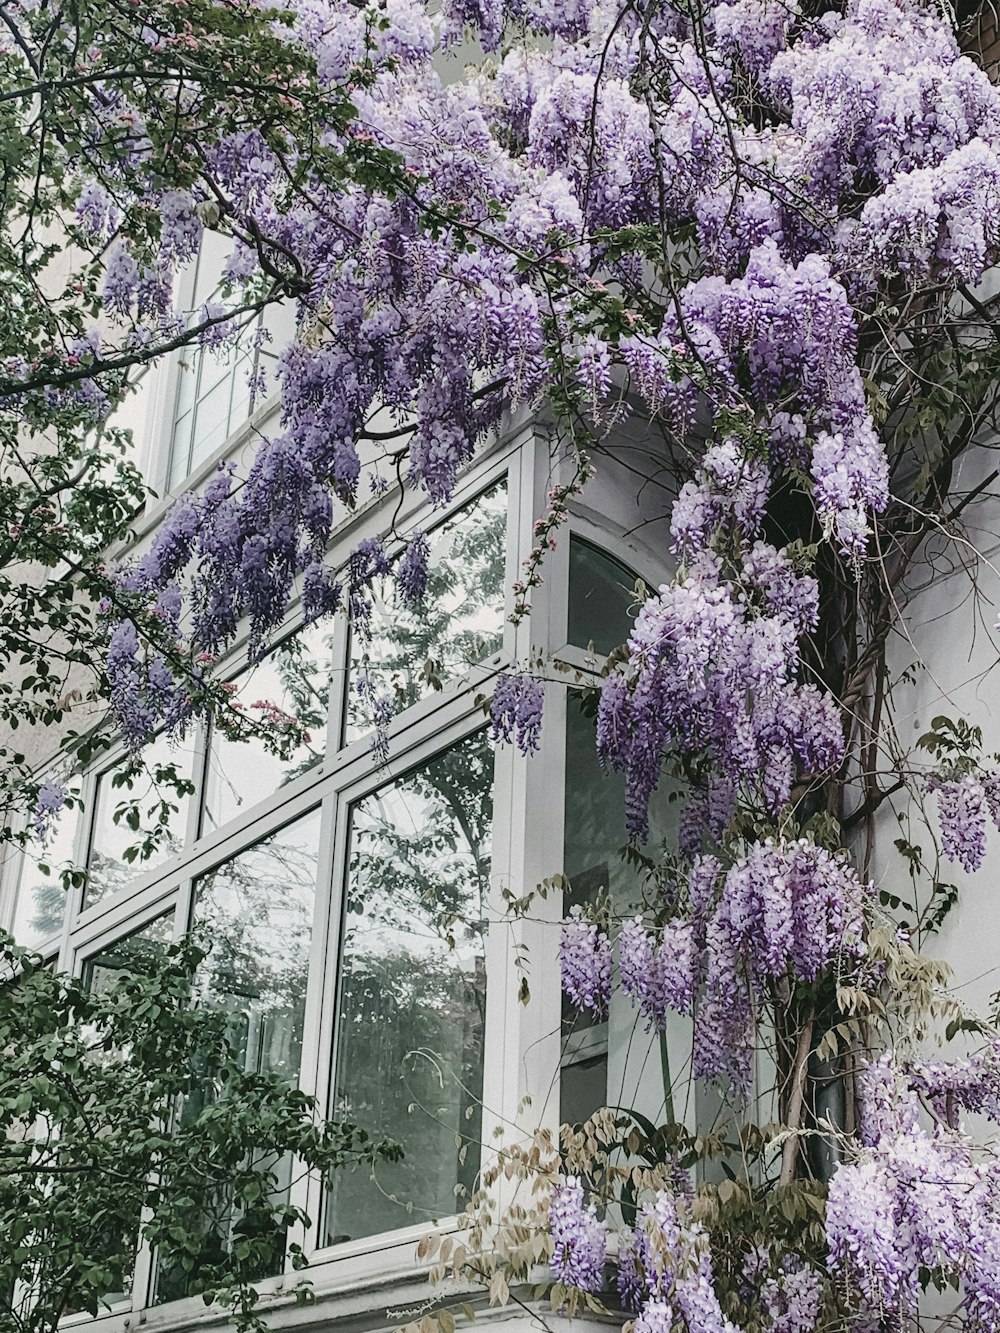 arbusti lilla vicino alla finestra di vetro